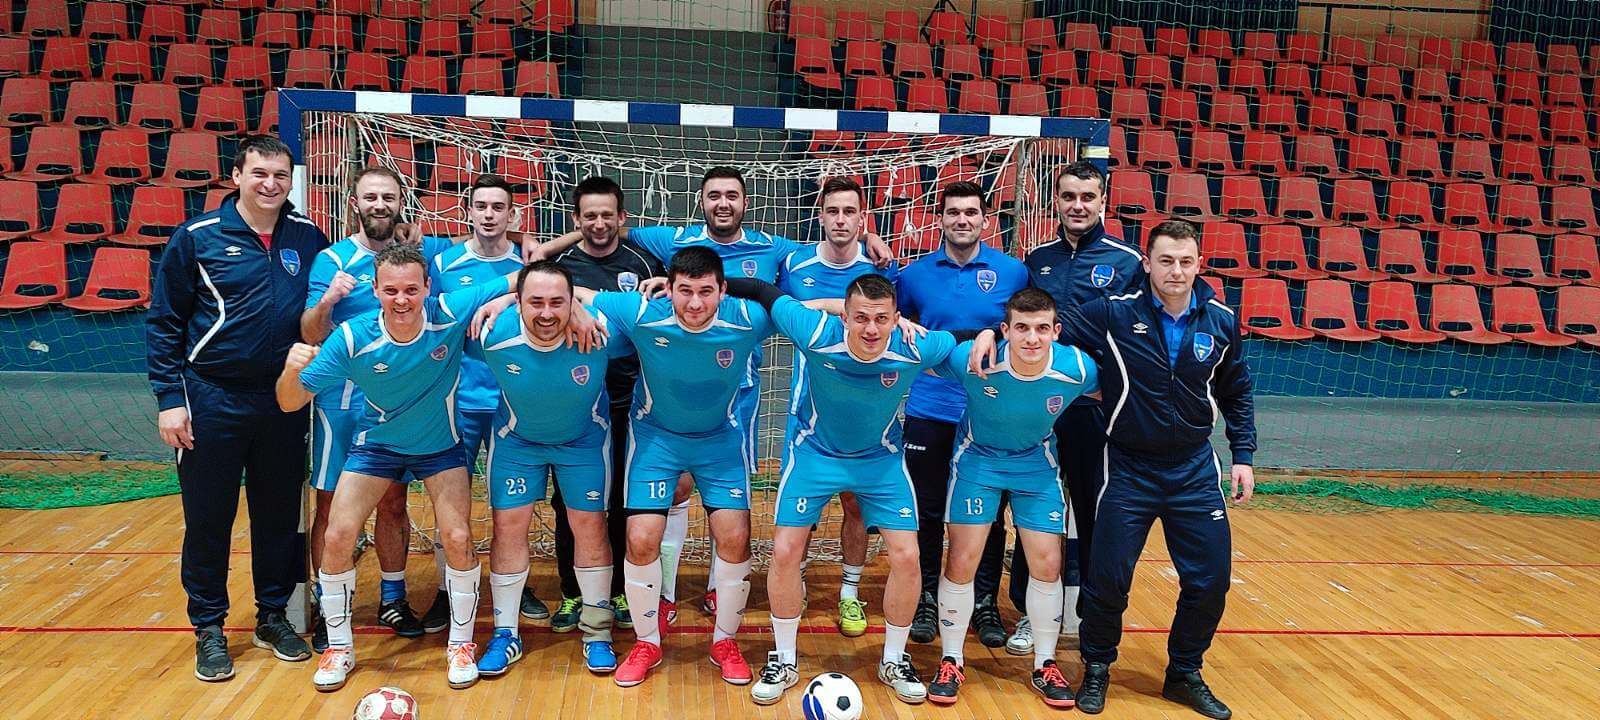 Požega.eu | Ekipa Zvone Šubare iz MNK Pleternica po prvi puta pobjednik Županijske malonogometne lige